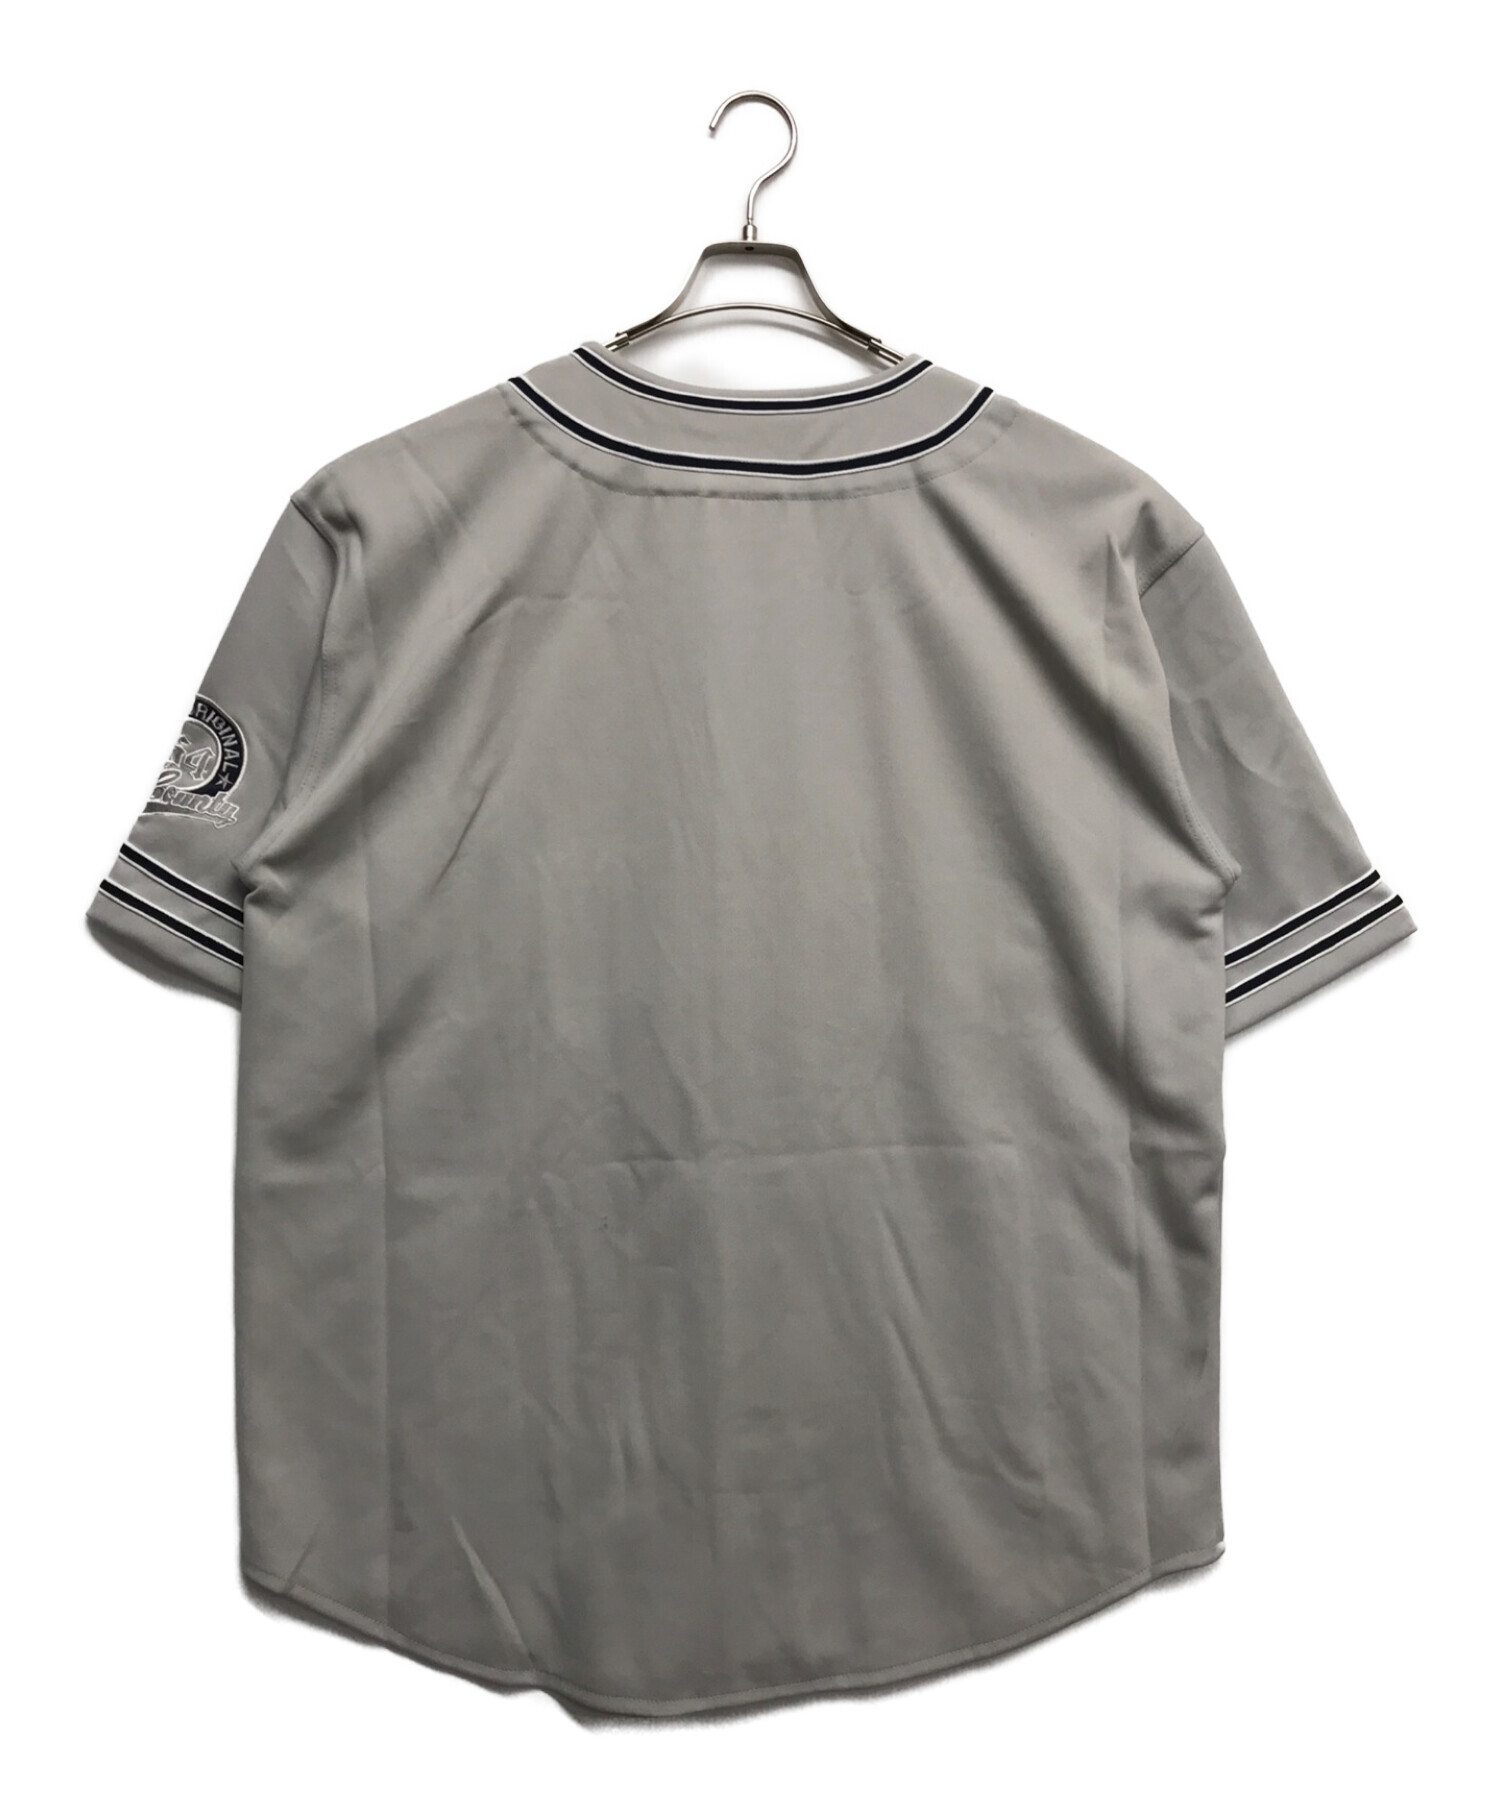 FB COUNTY (エフビーカウンティー) ゲームシャツ グレー サイズ:XL